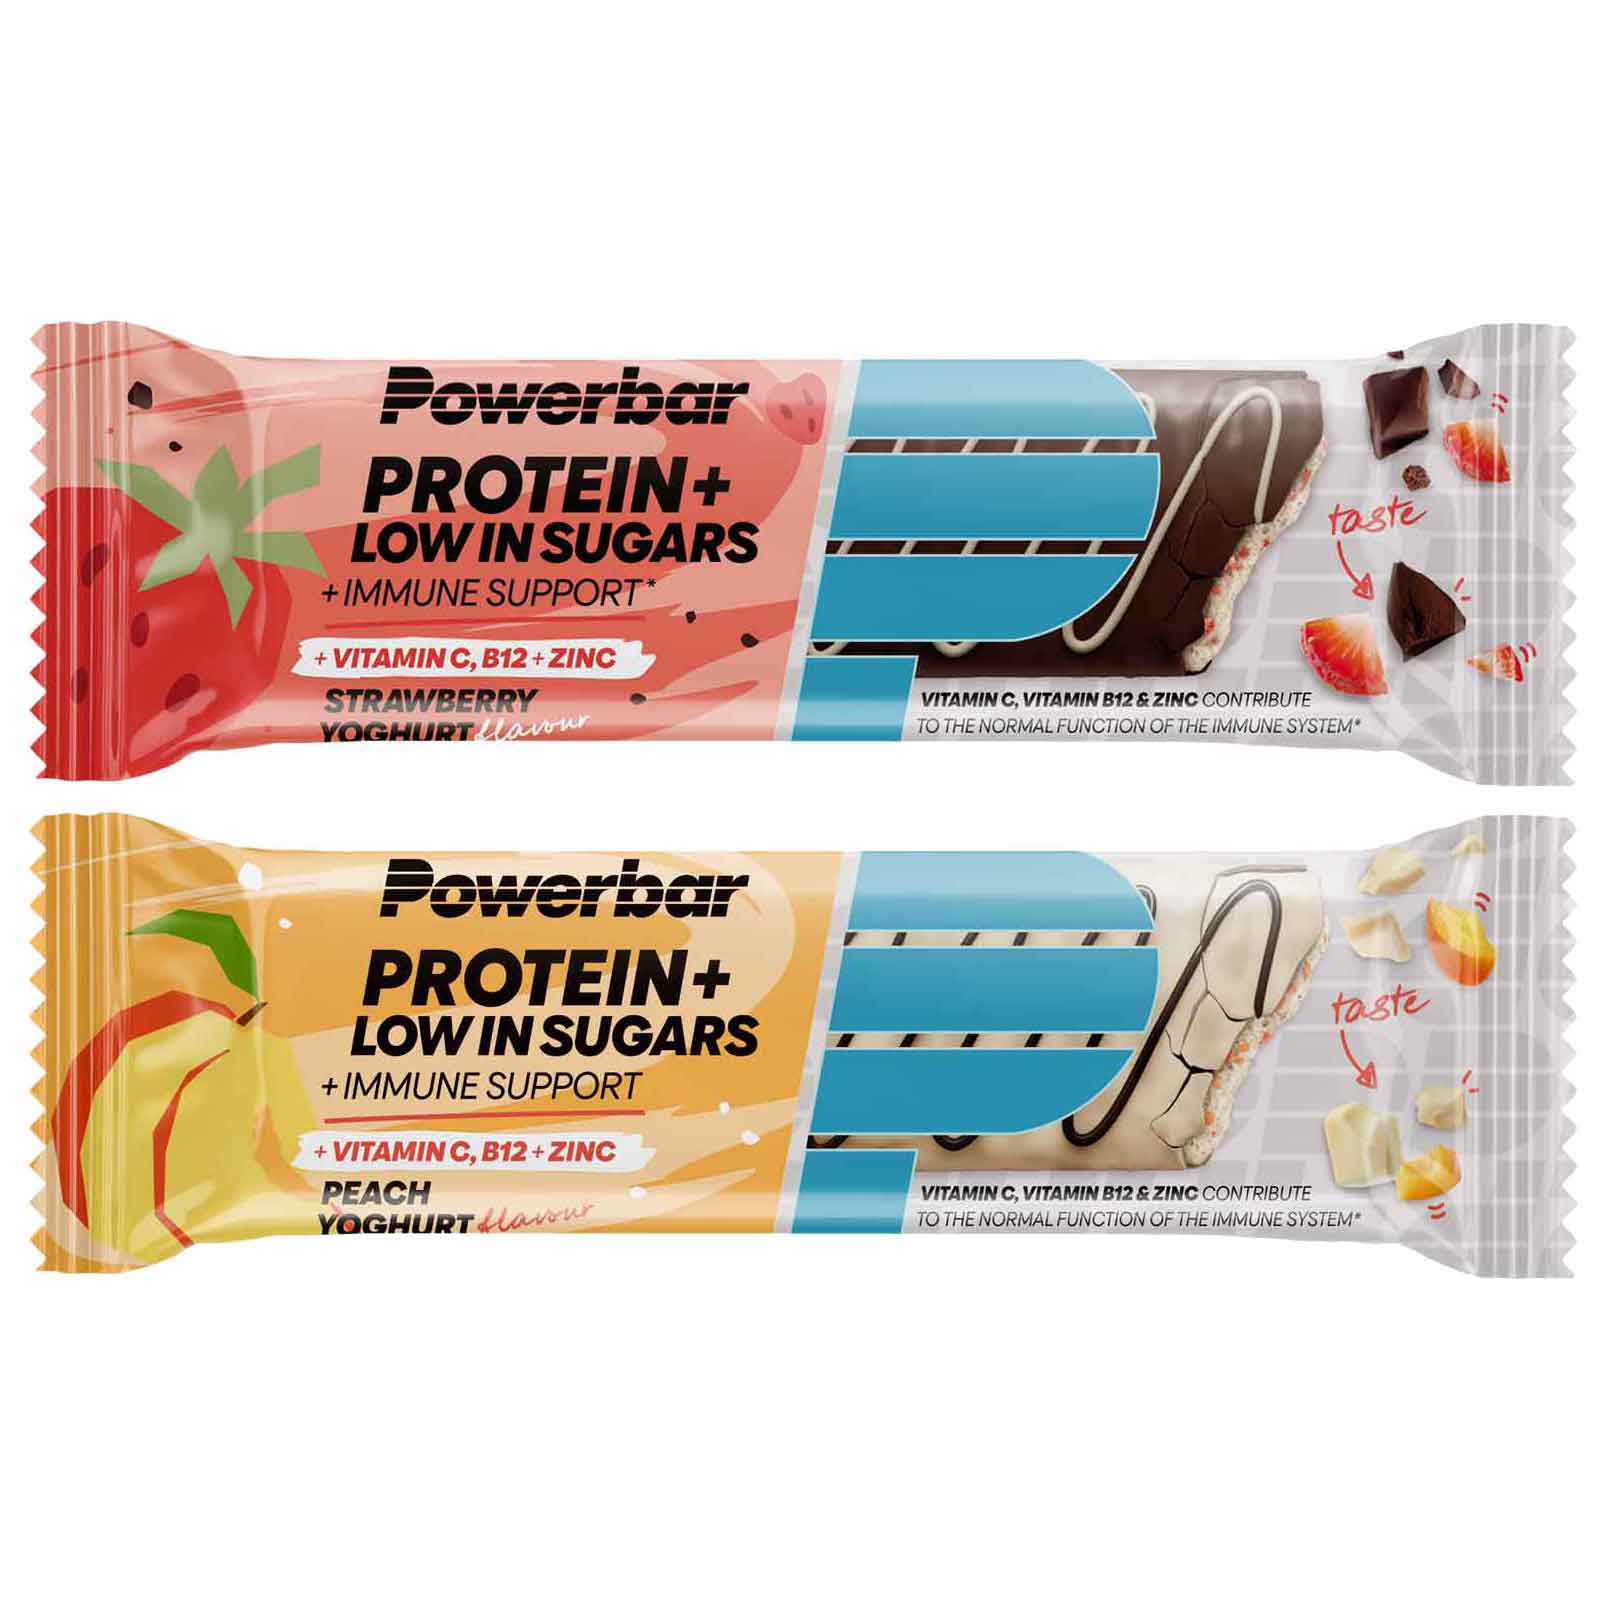 Produktbild von Powerbar Protein+ Low in Sugars Immune Support - Eiweißriegel - 35g